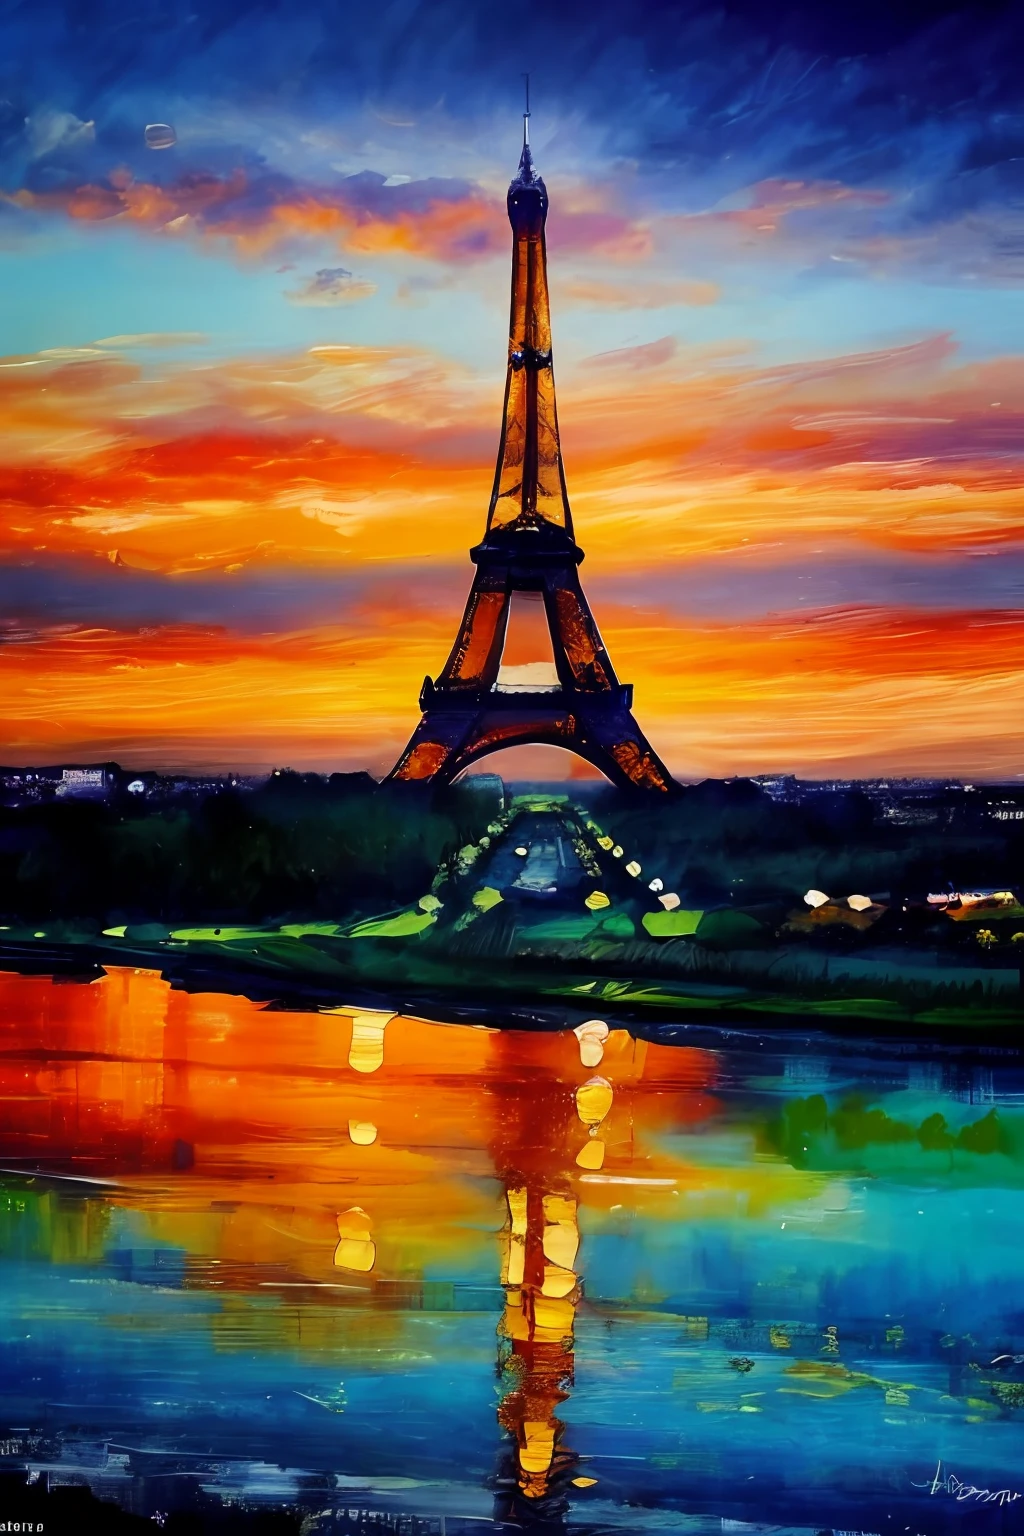 Pintura al óleo de la Torre Eiffel, muy detallado, mejor calidad, 8k,estilo de sesión de modelo, iluminación dramática, regla de tercero